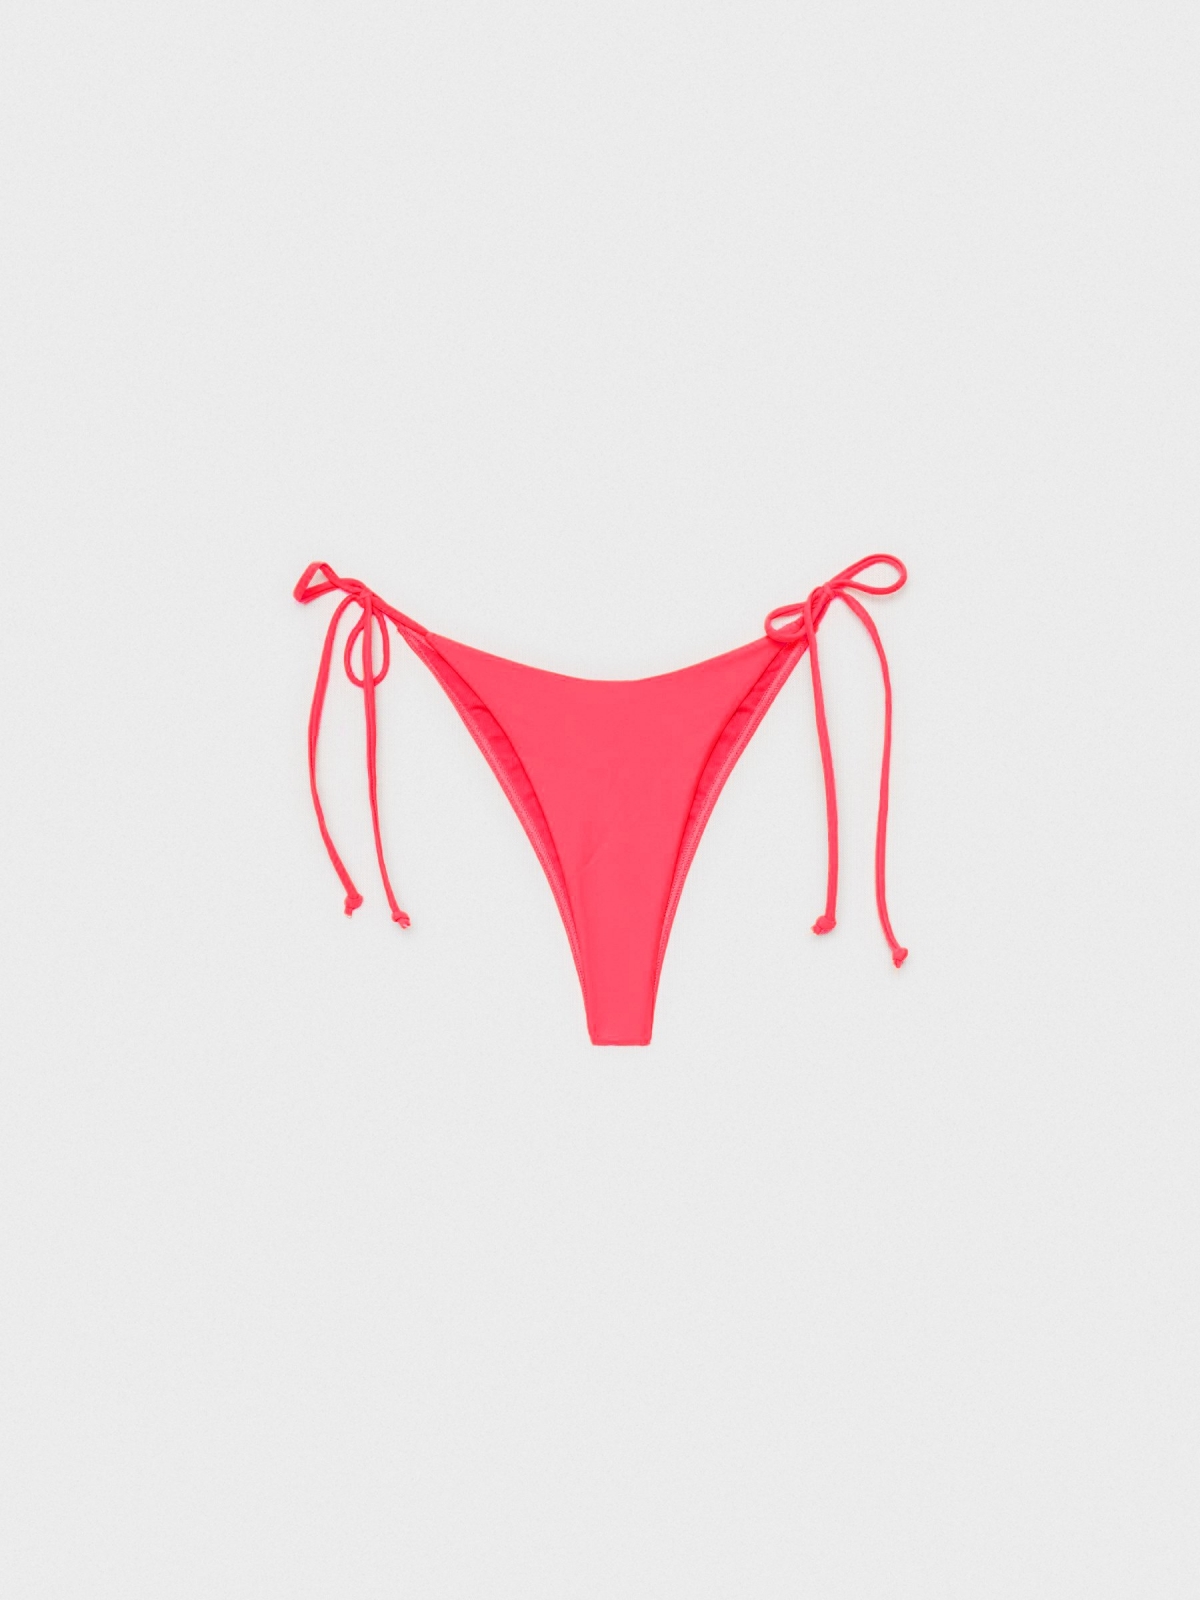  Fundos de bikini brasileiro de gola em V laranja